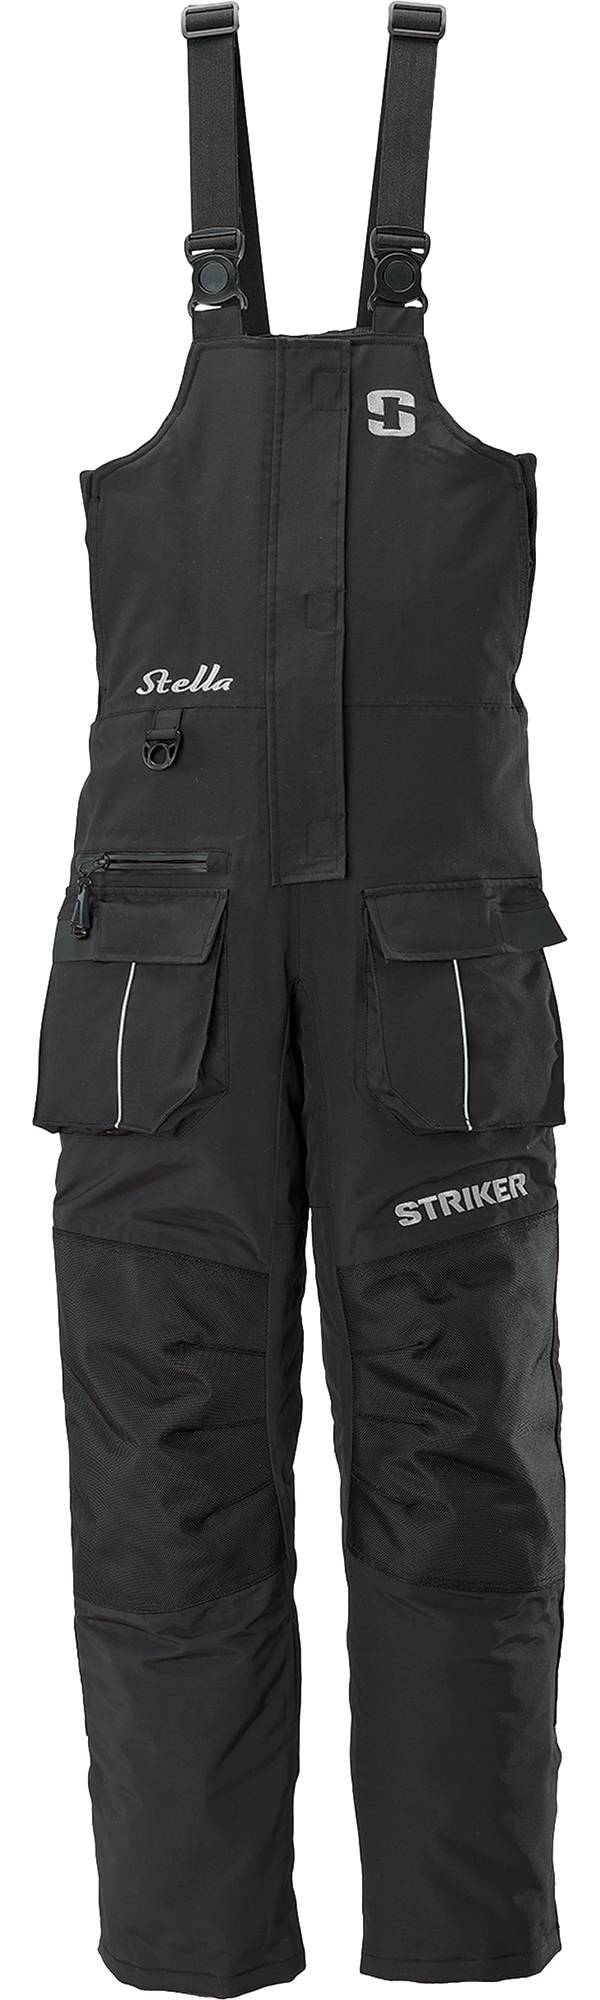 Striker Women's Stella Bibs product image